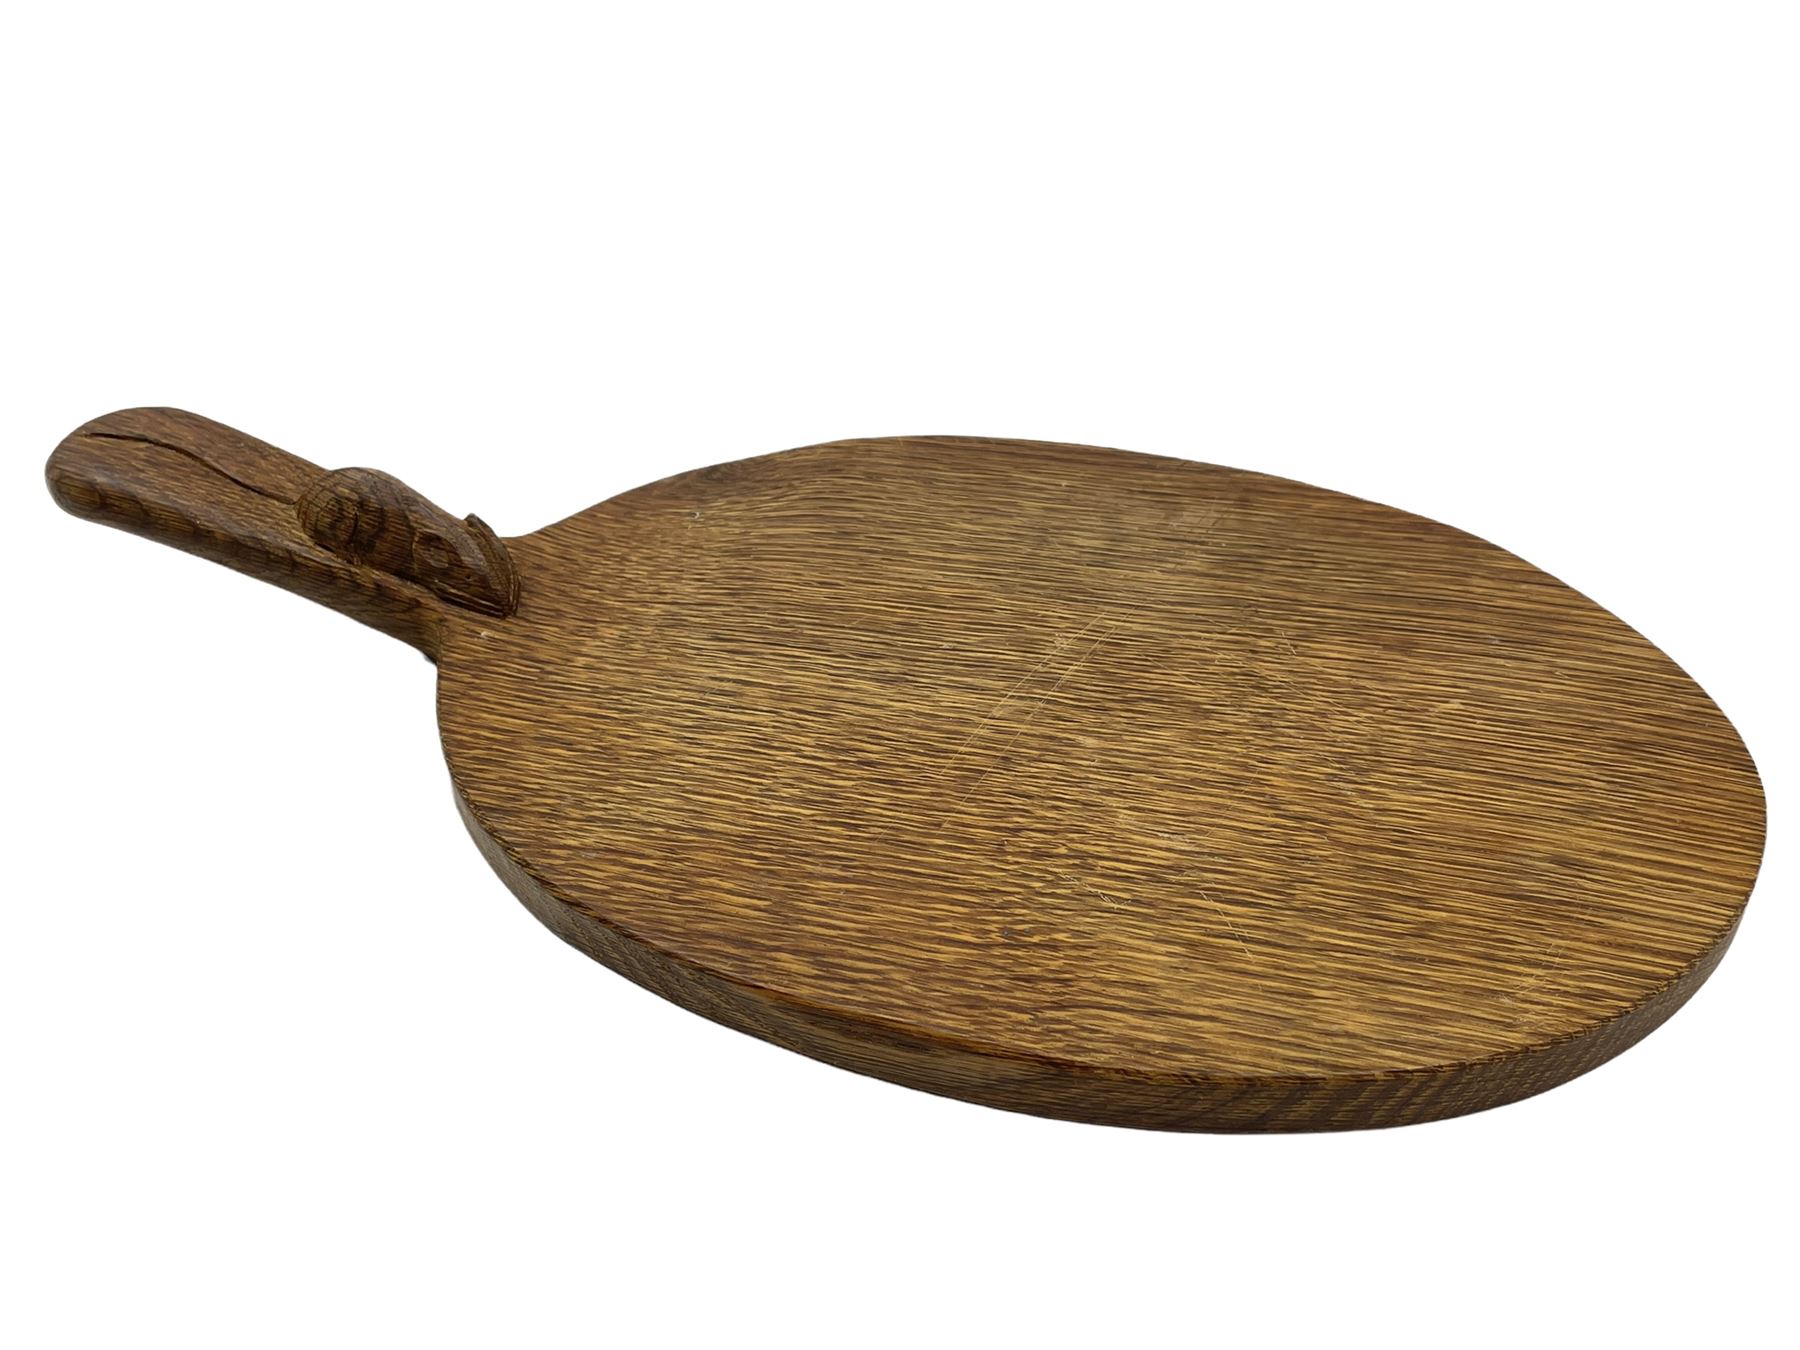 Mouseman - adzed oak cheeseboard - Image 5 of 6